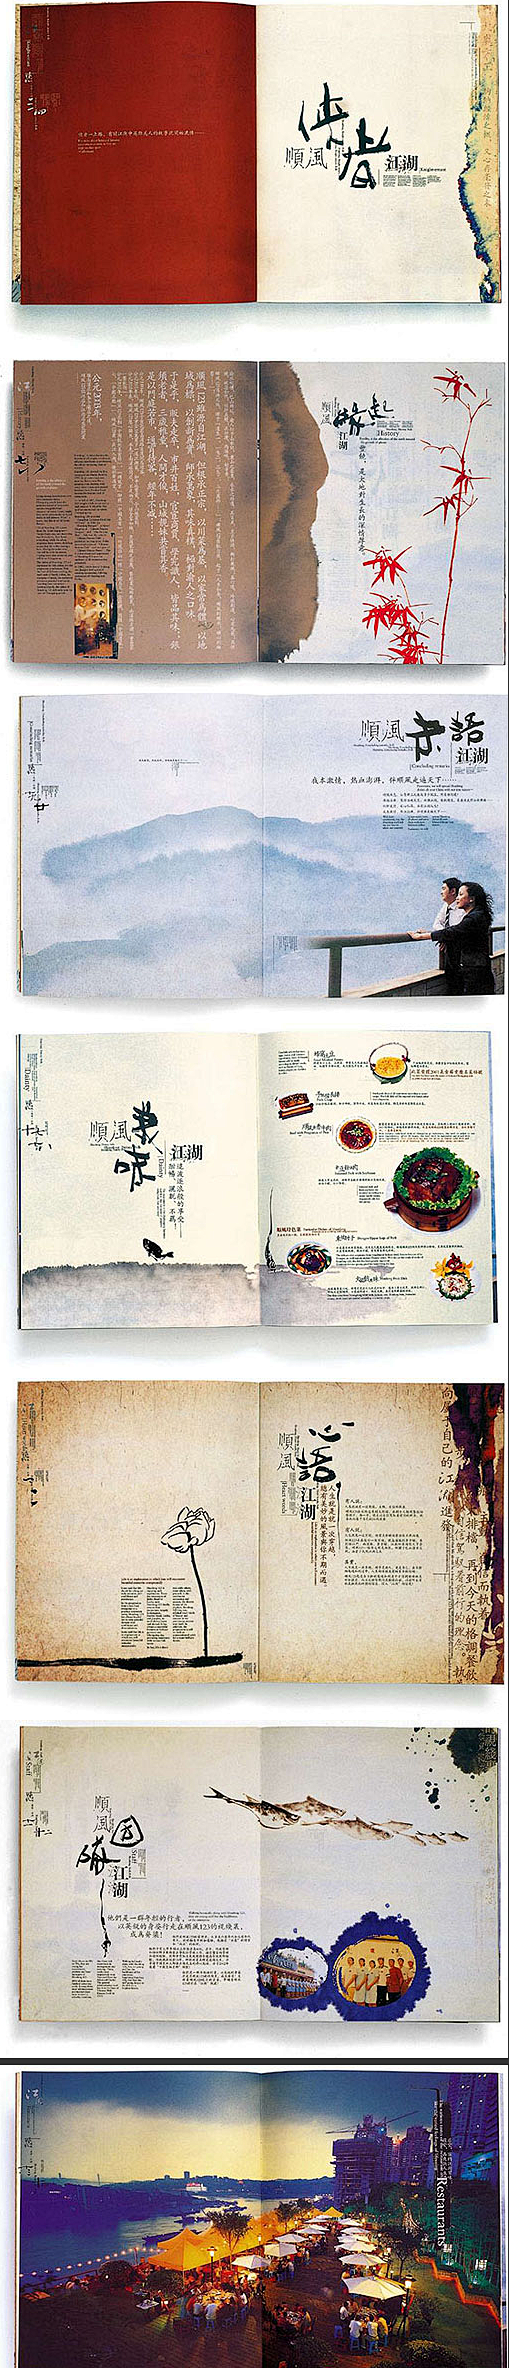 中国画册设计欣赏网 中国画册设计鉴赏网 ...